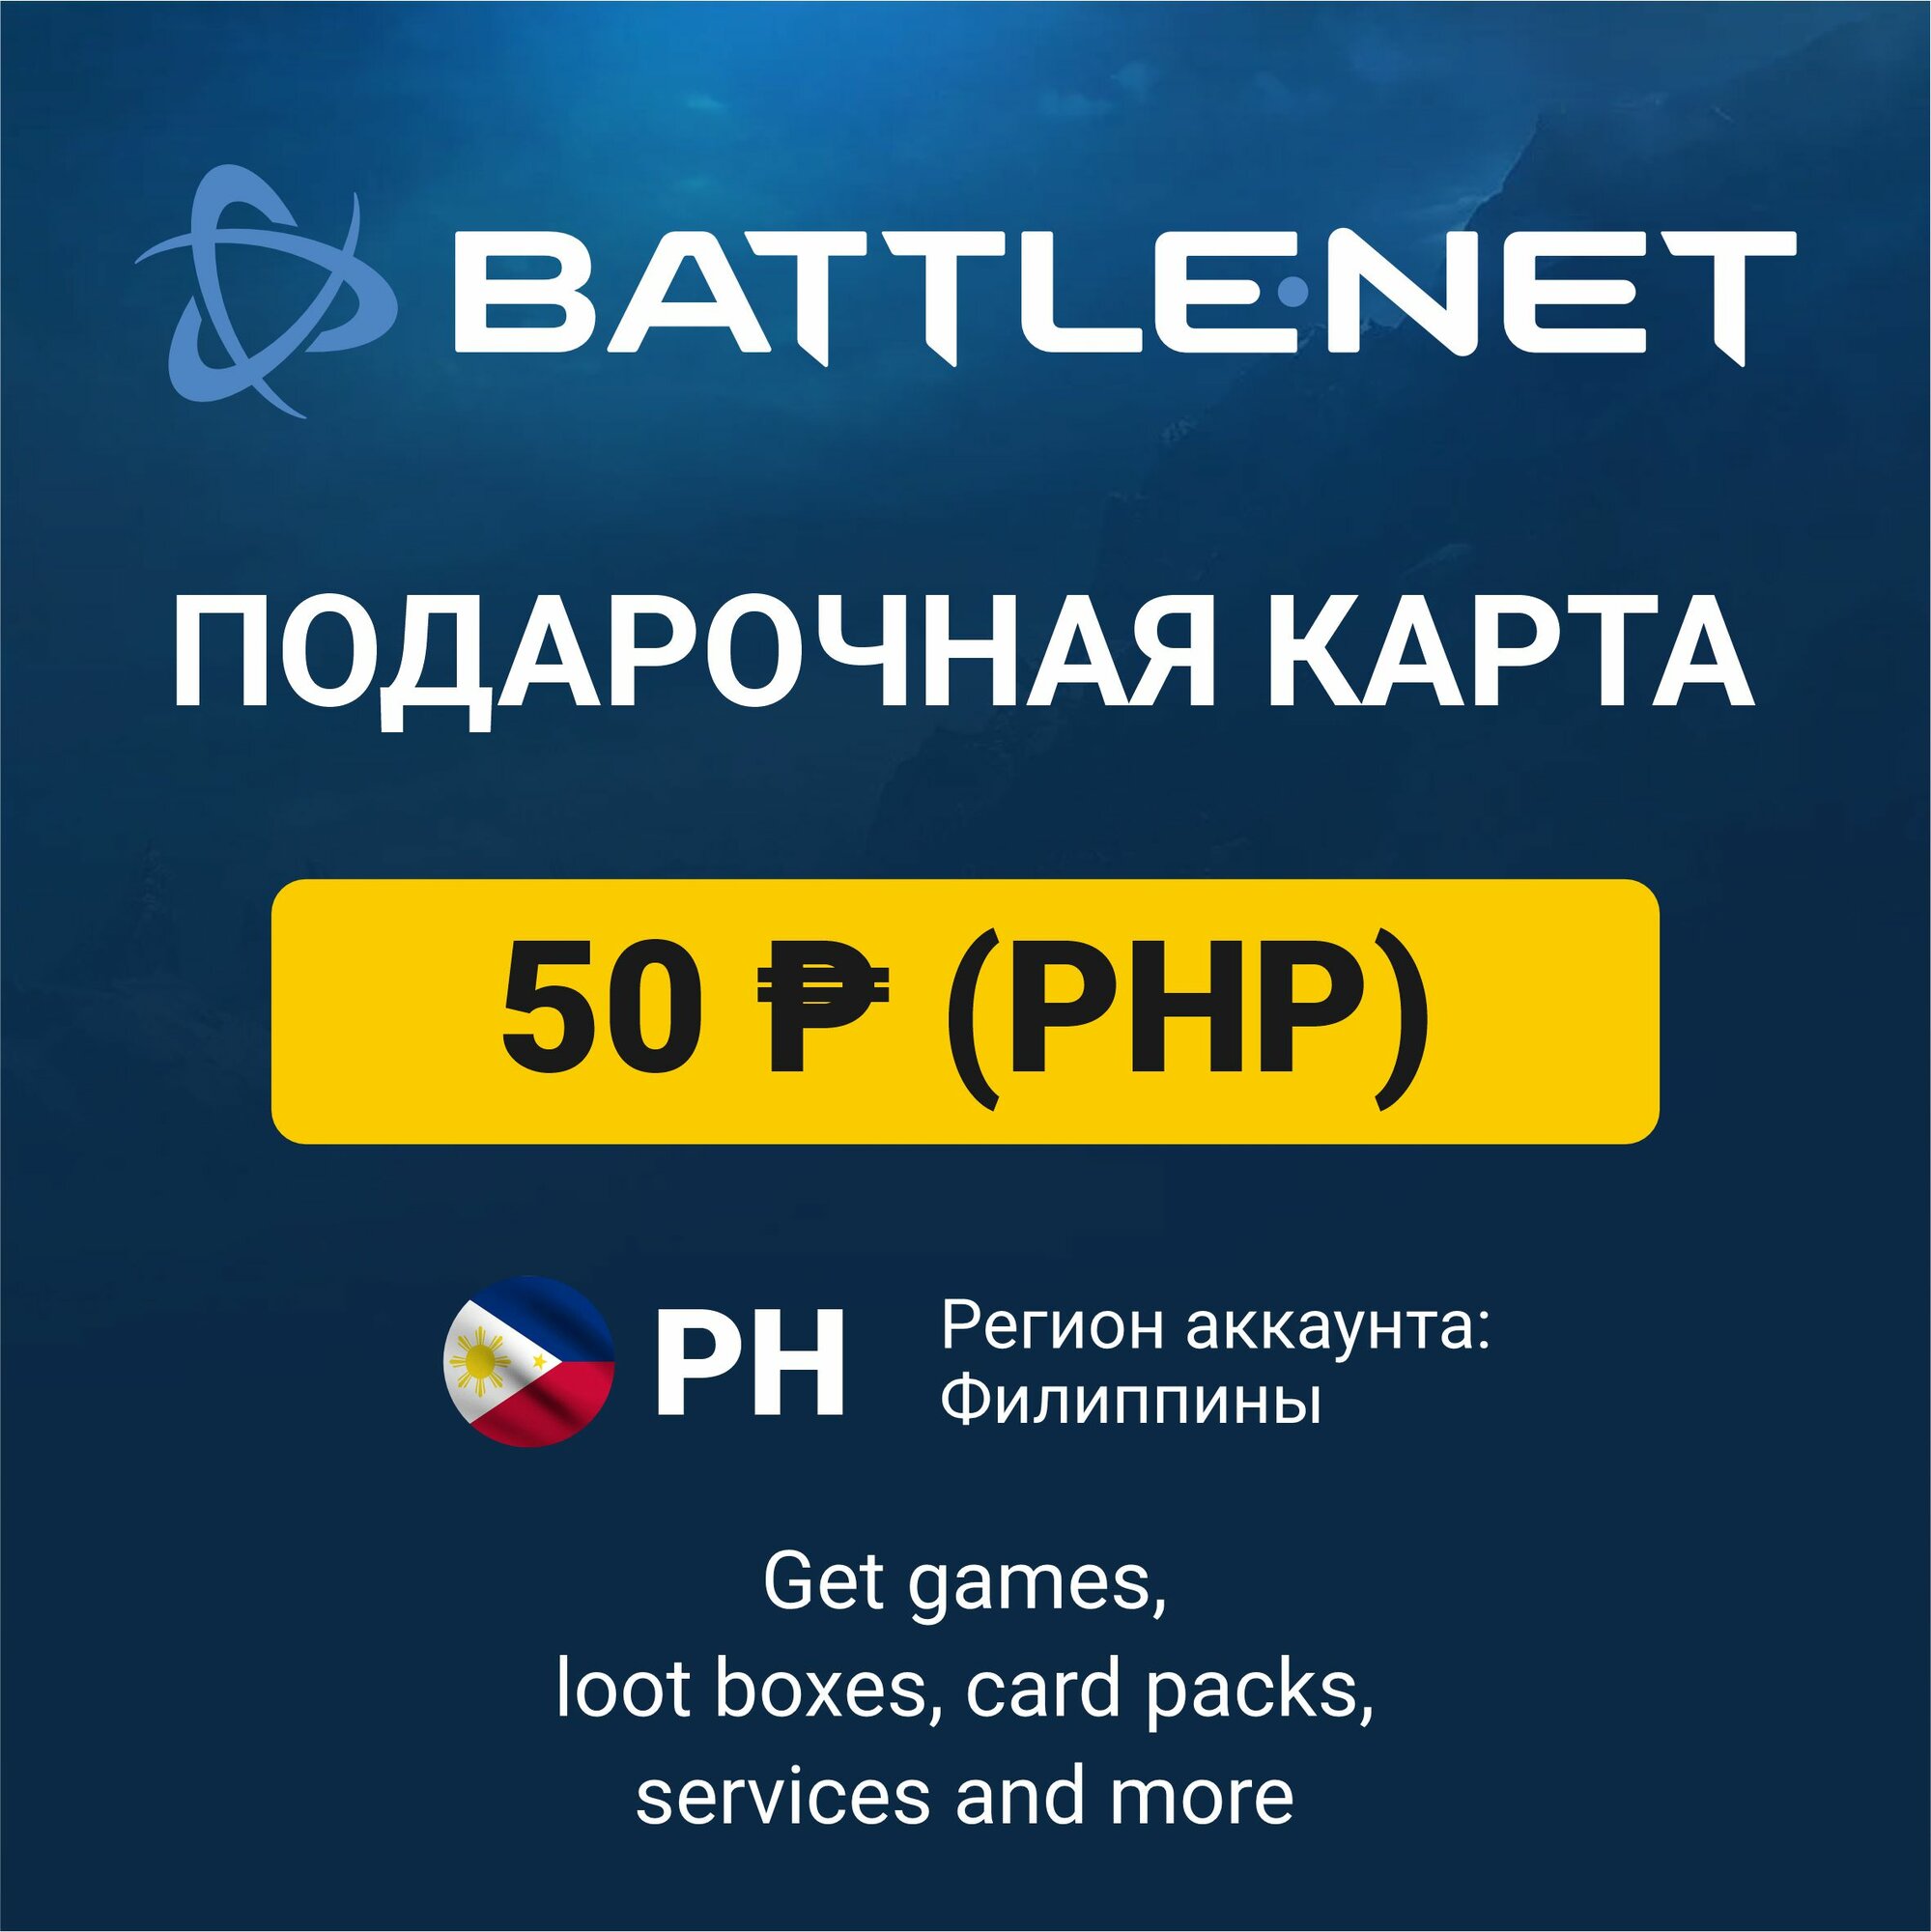 Подарочный код 50 PHP Battle.net Blizzard (регион: Филиппины) карта оплаты / цифровой код